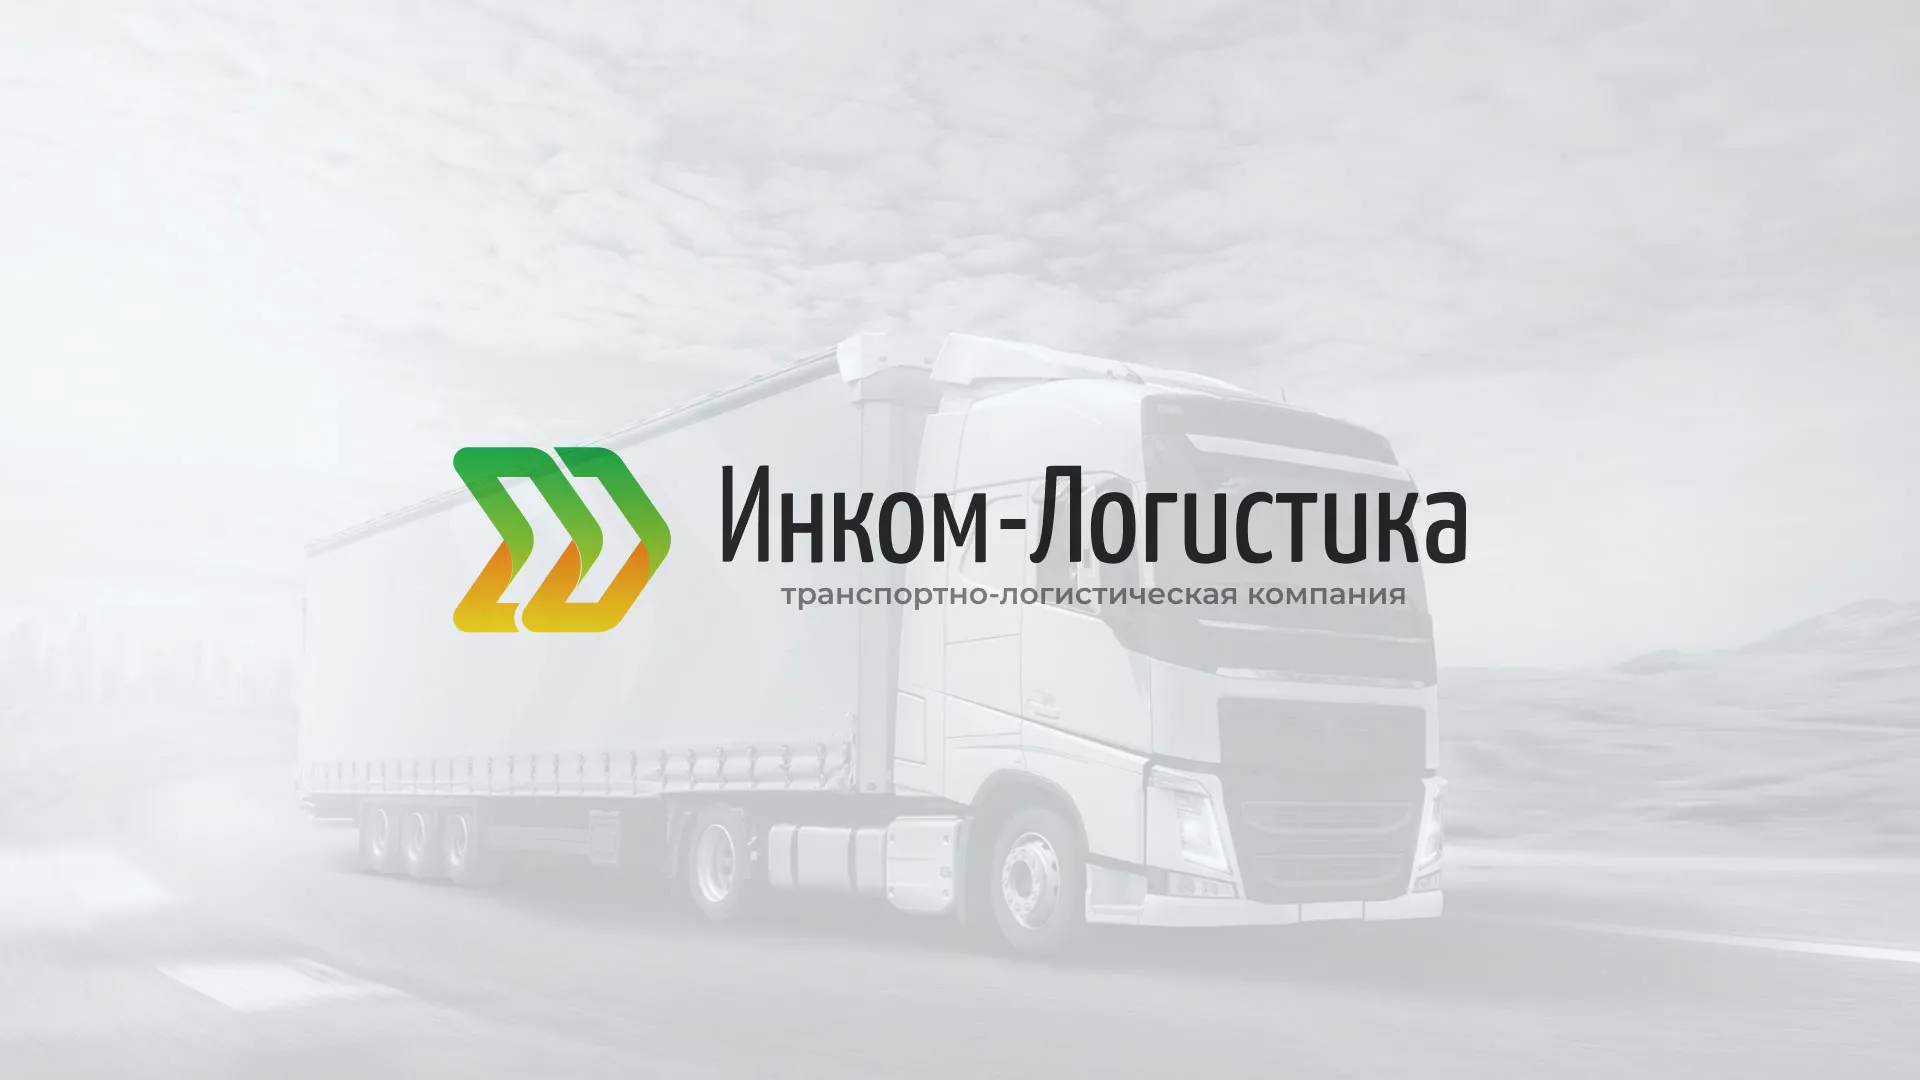 Разработка логотипа и сайта компании «Инком-Логистика» в Петровске-Забайкальском